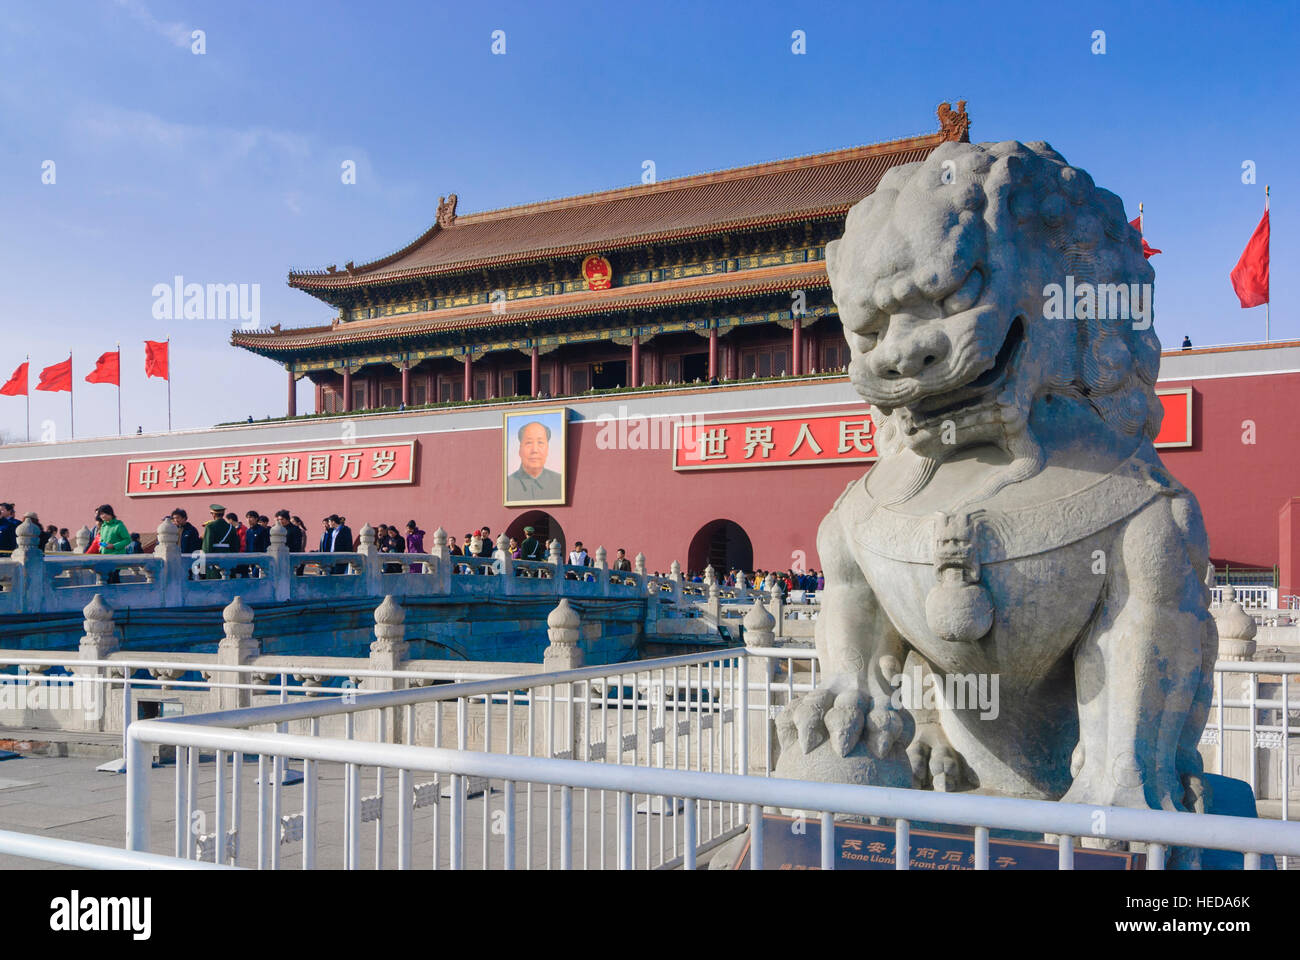 Peking: Platz des himmlischen Friedens; Tor des himmlischen Friedens mit Mao-Porträt, Peking, China Stockfoto